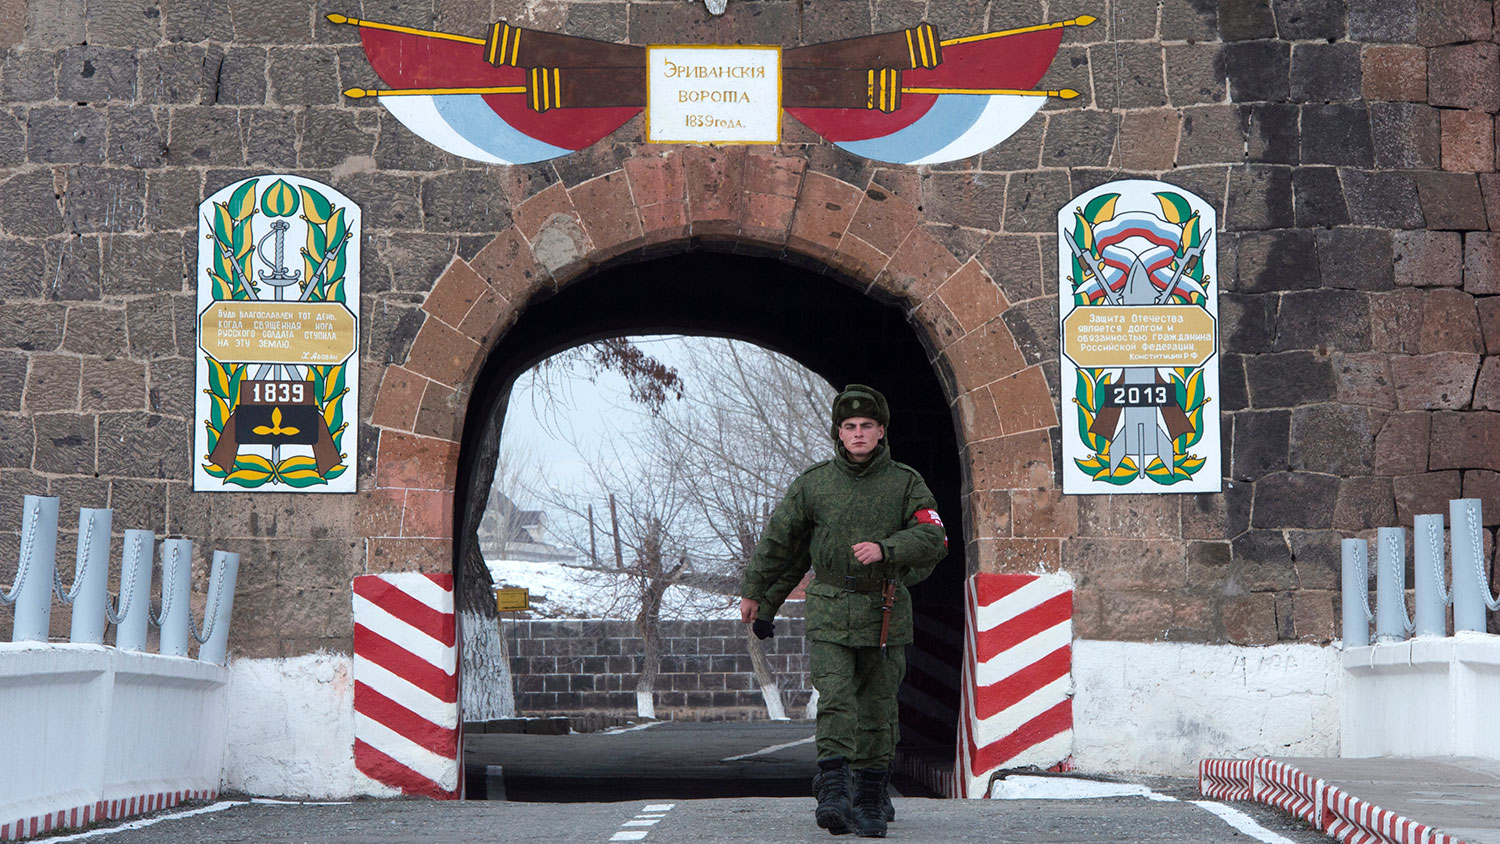 Захарова: Российские дипломаты в Армении привились "Спутником V" на военной базе в Гюмри  